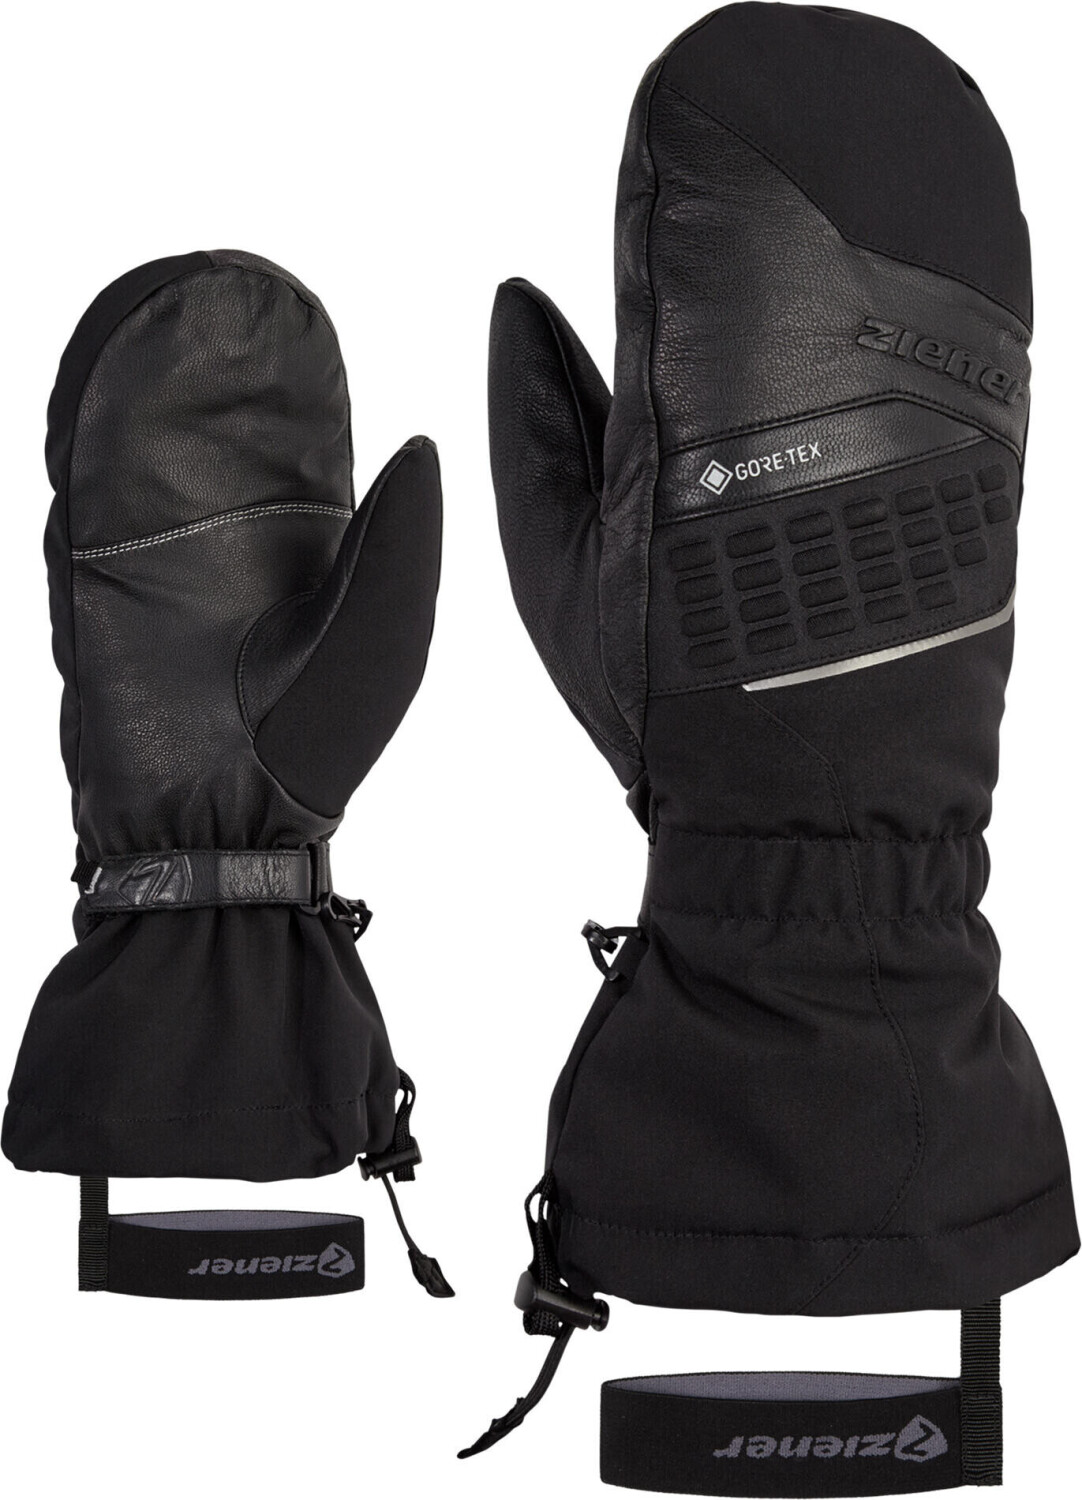 Ziener Gastilo GTX Mitten Glove Ski Alpine black ab 70,16 € |  Preisvergleich bei